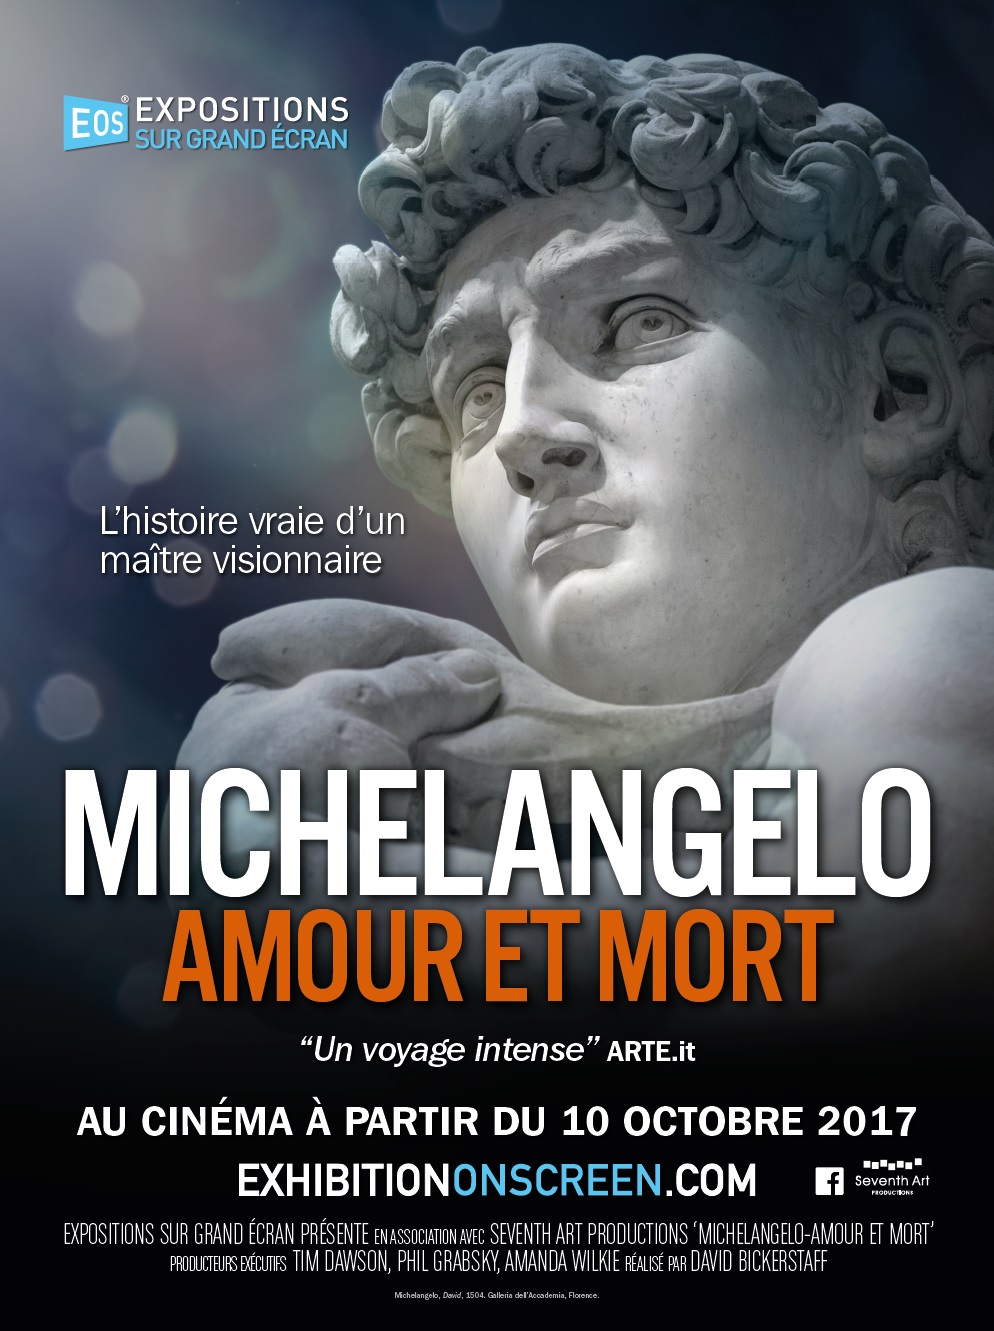 Michelangelo – Amour et mort